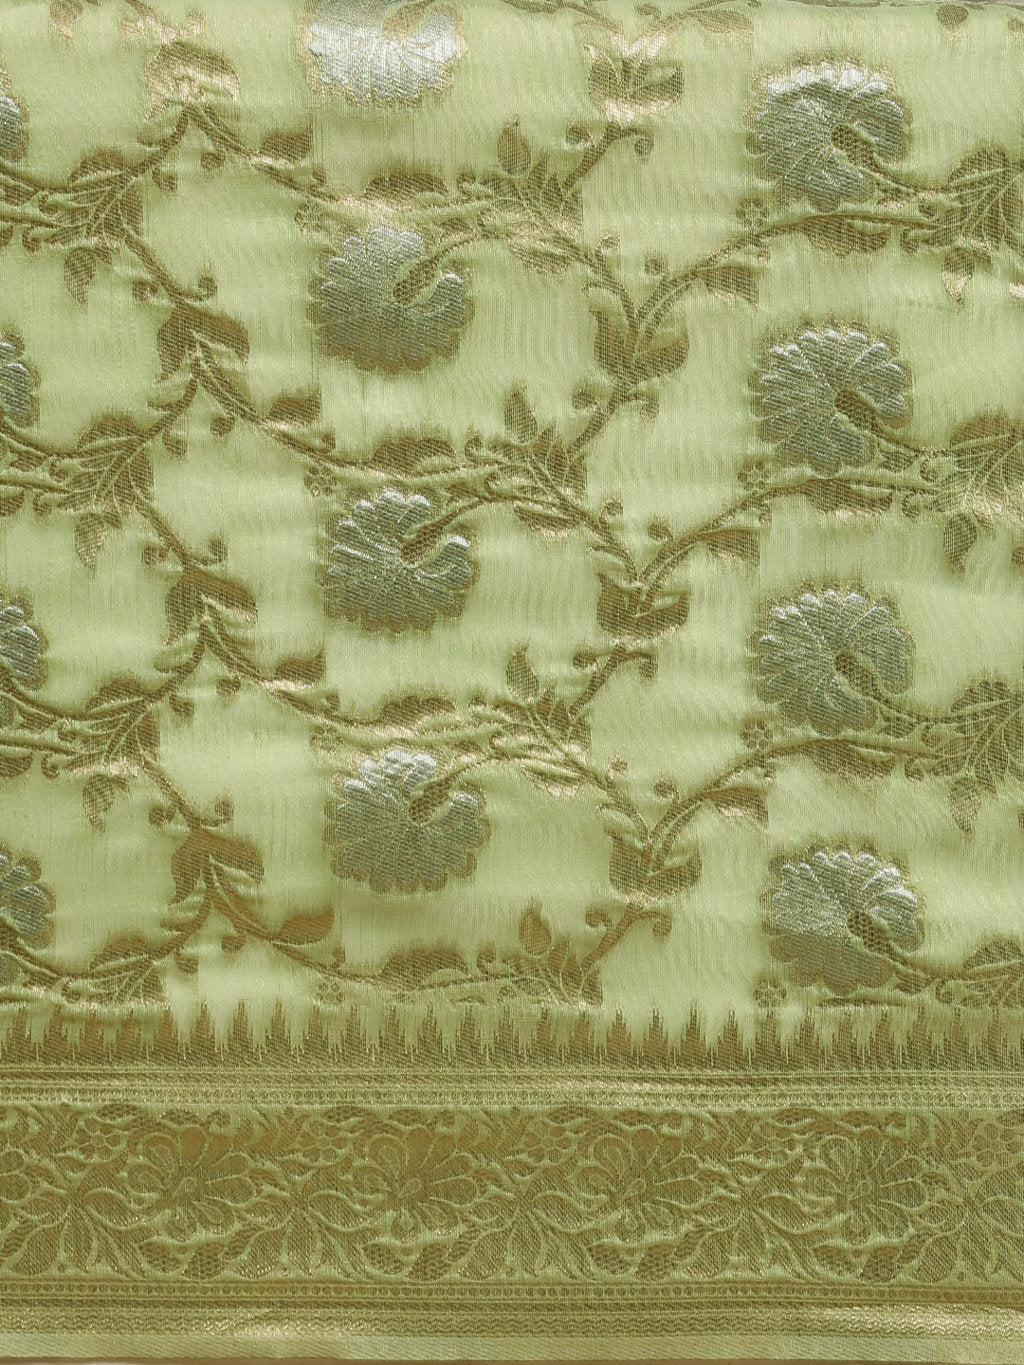 Women's Light Green Linen Woven Work Traditional Saree - Sangam Prints